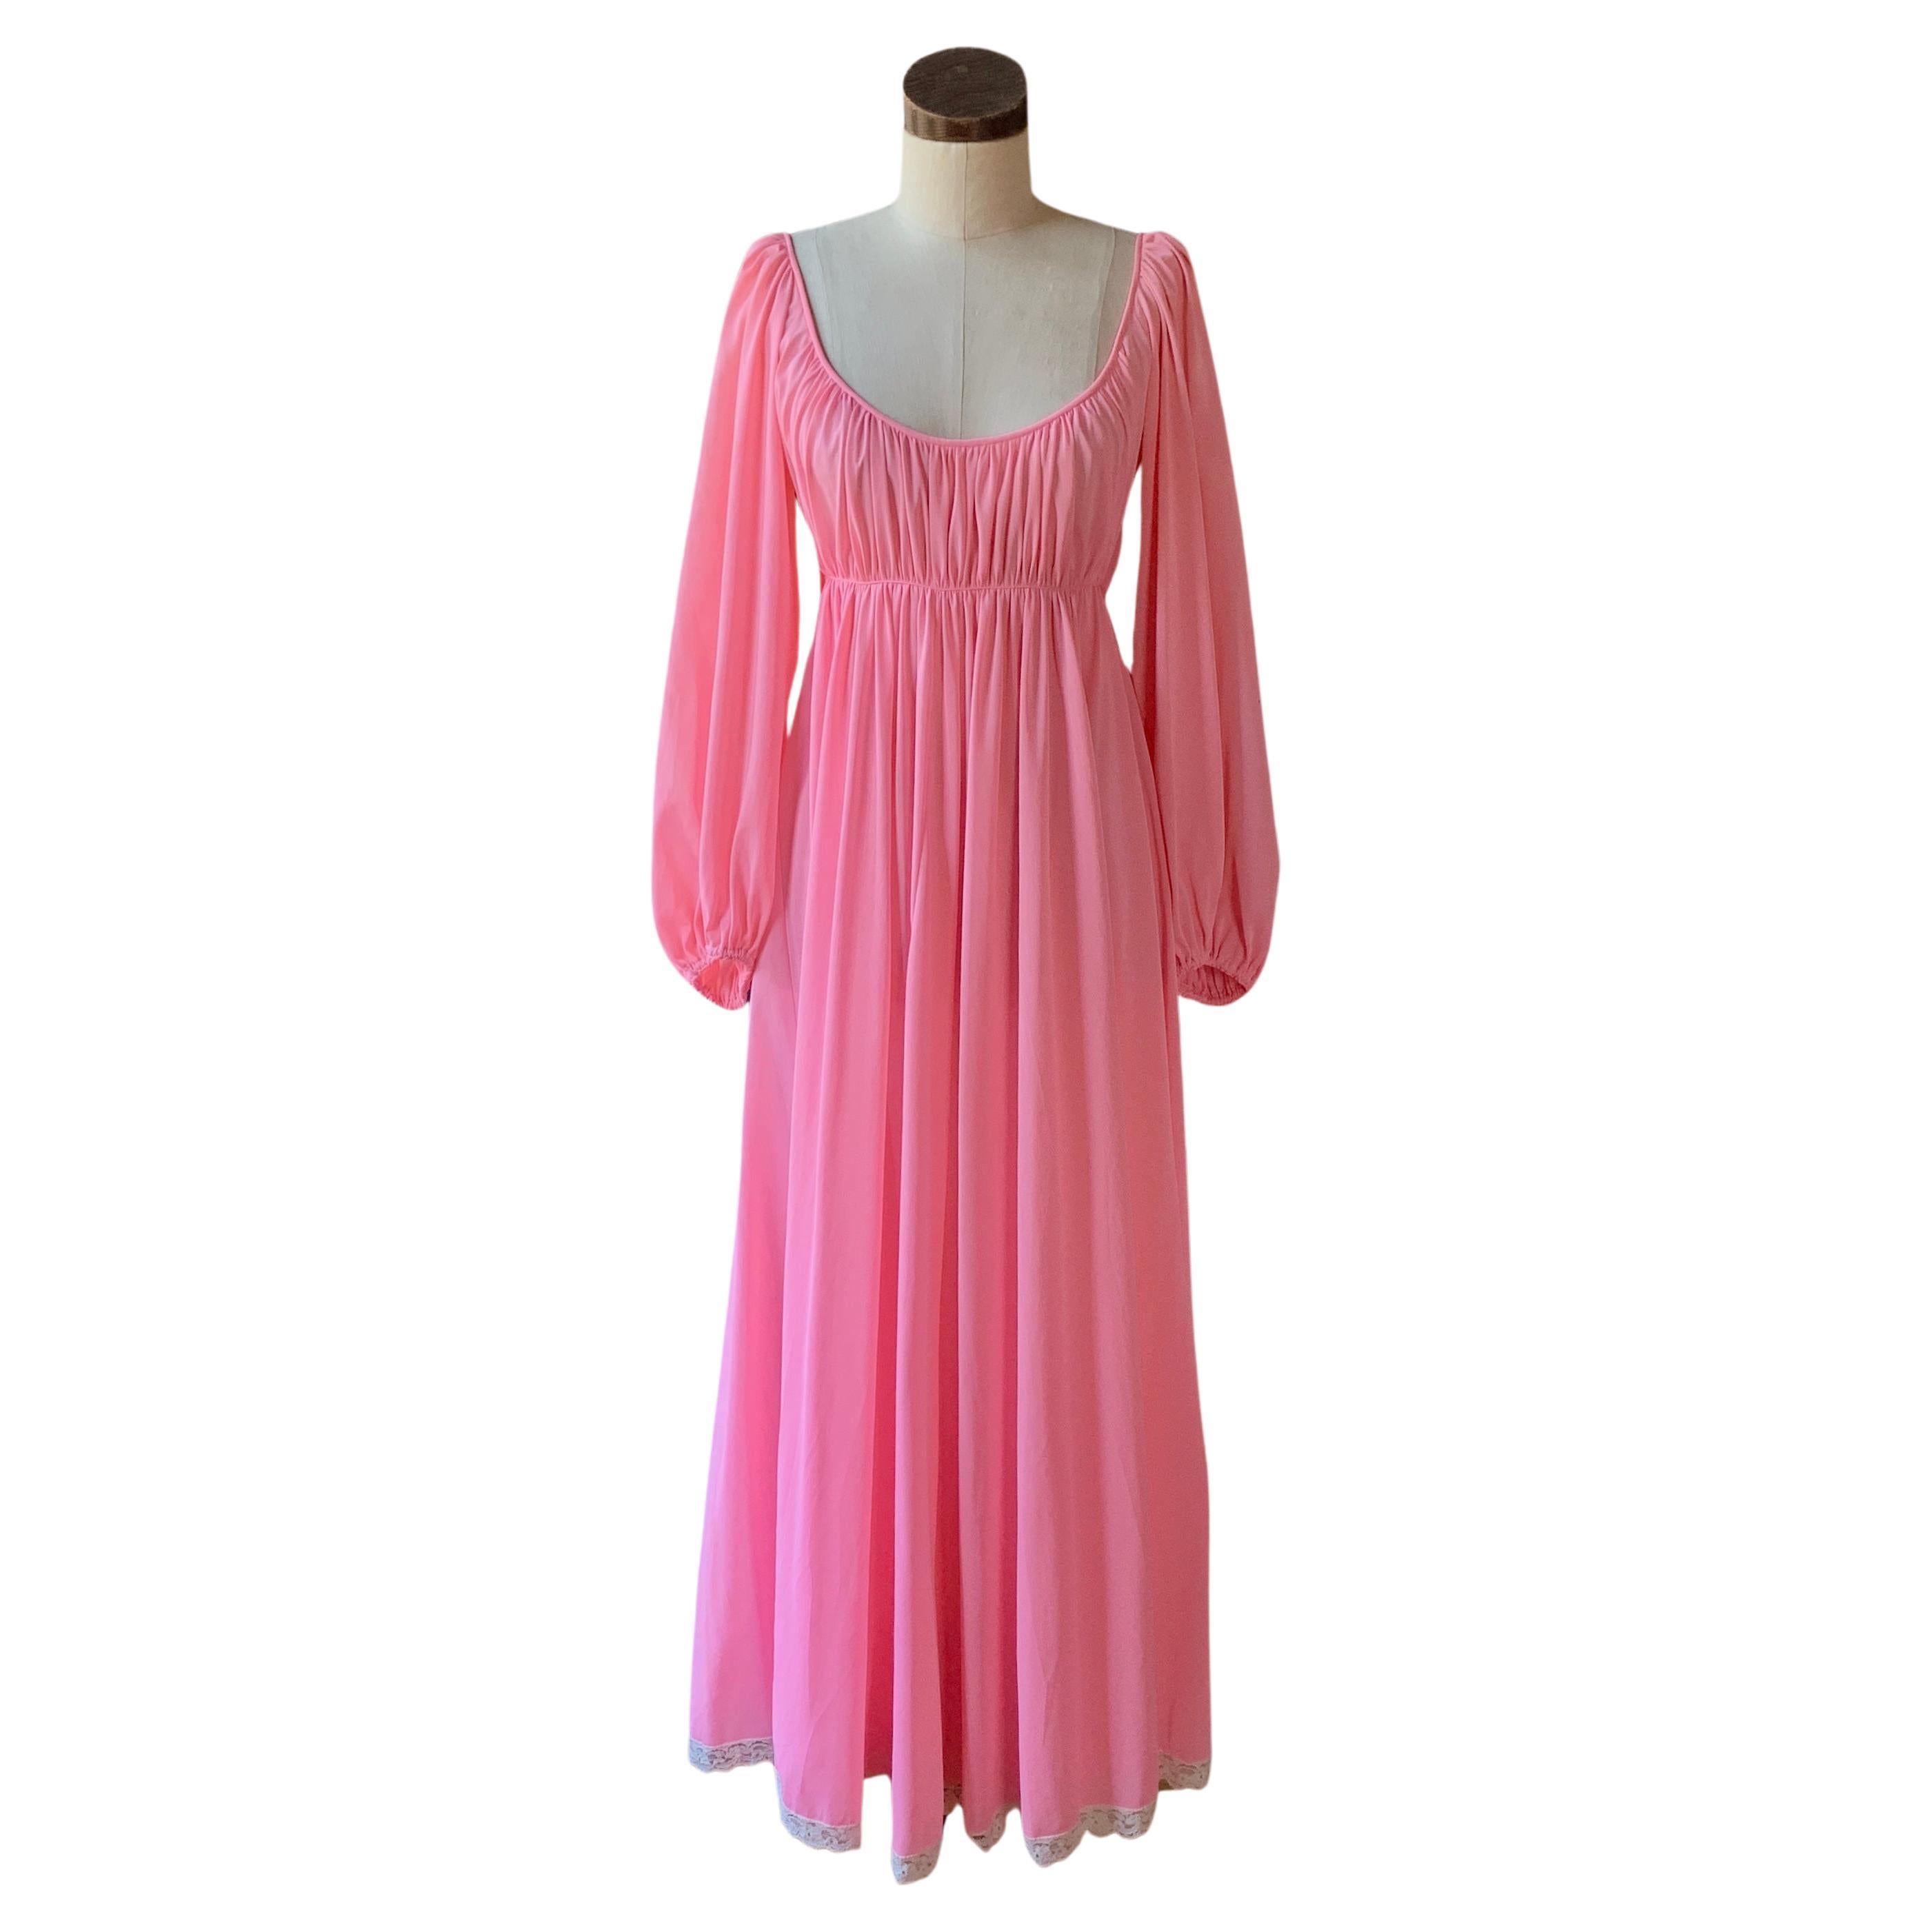 CLARE SANDRA LUCIE ANN Rosa Vintage SCHWARZES schulterfreies plissiertes Vintage-Nachtkleid 36 